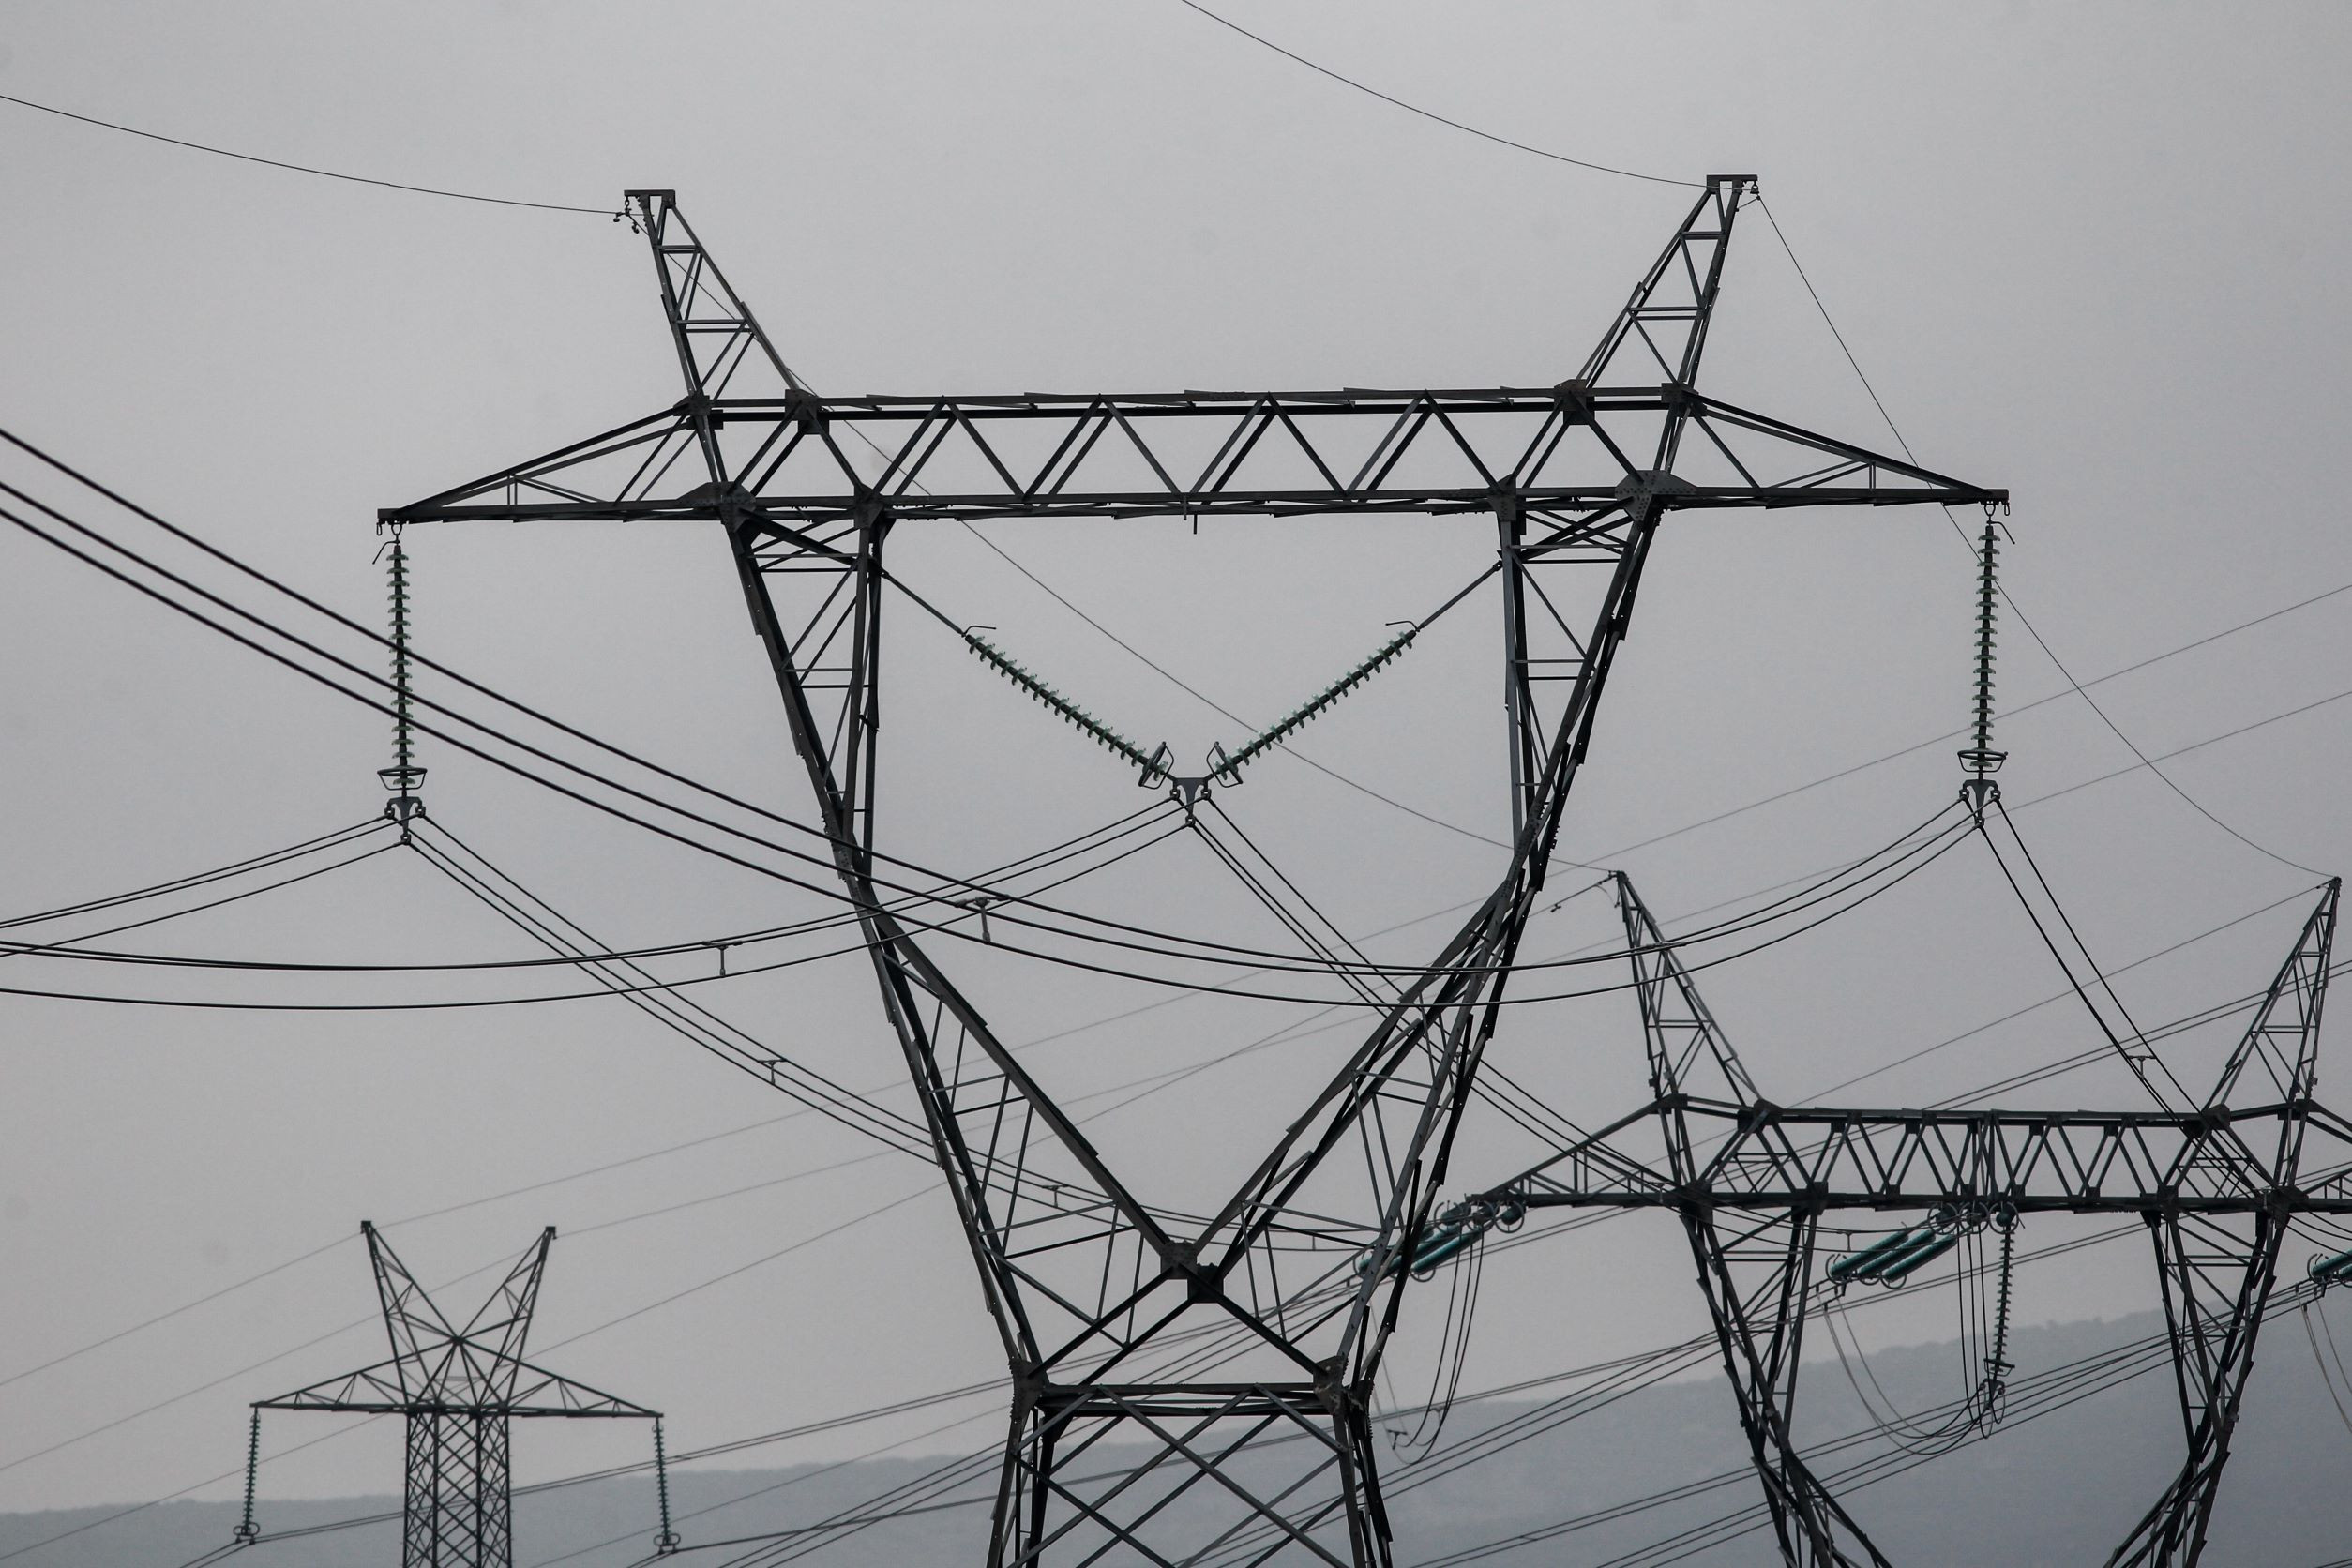 Στην Επιτροπή Ανταγωνισμού παραπέμπει η ΡΑΕ την αγορά ηλεκτρικής ενέργειας – Αιχμές κατά της κυβέρνησης